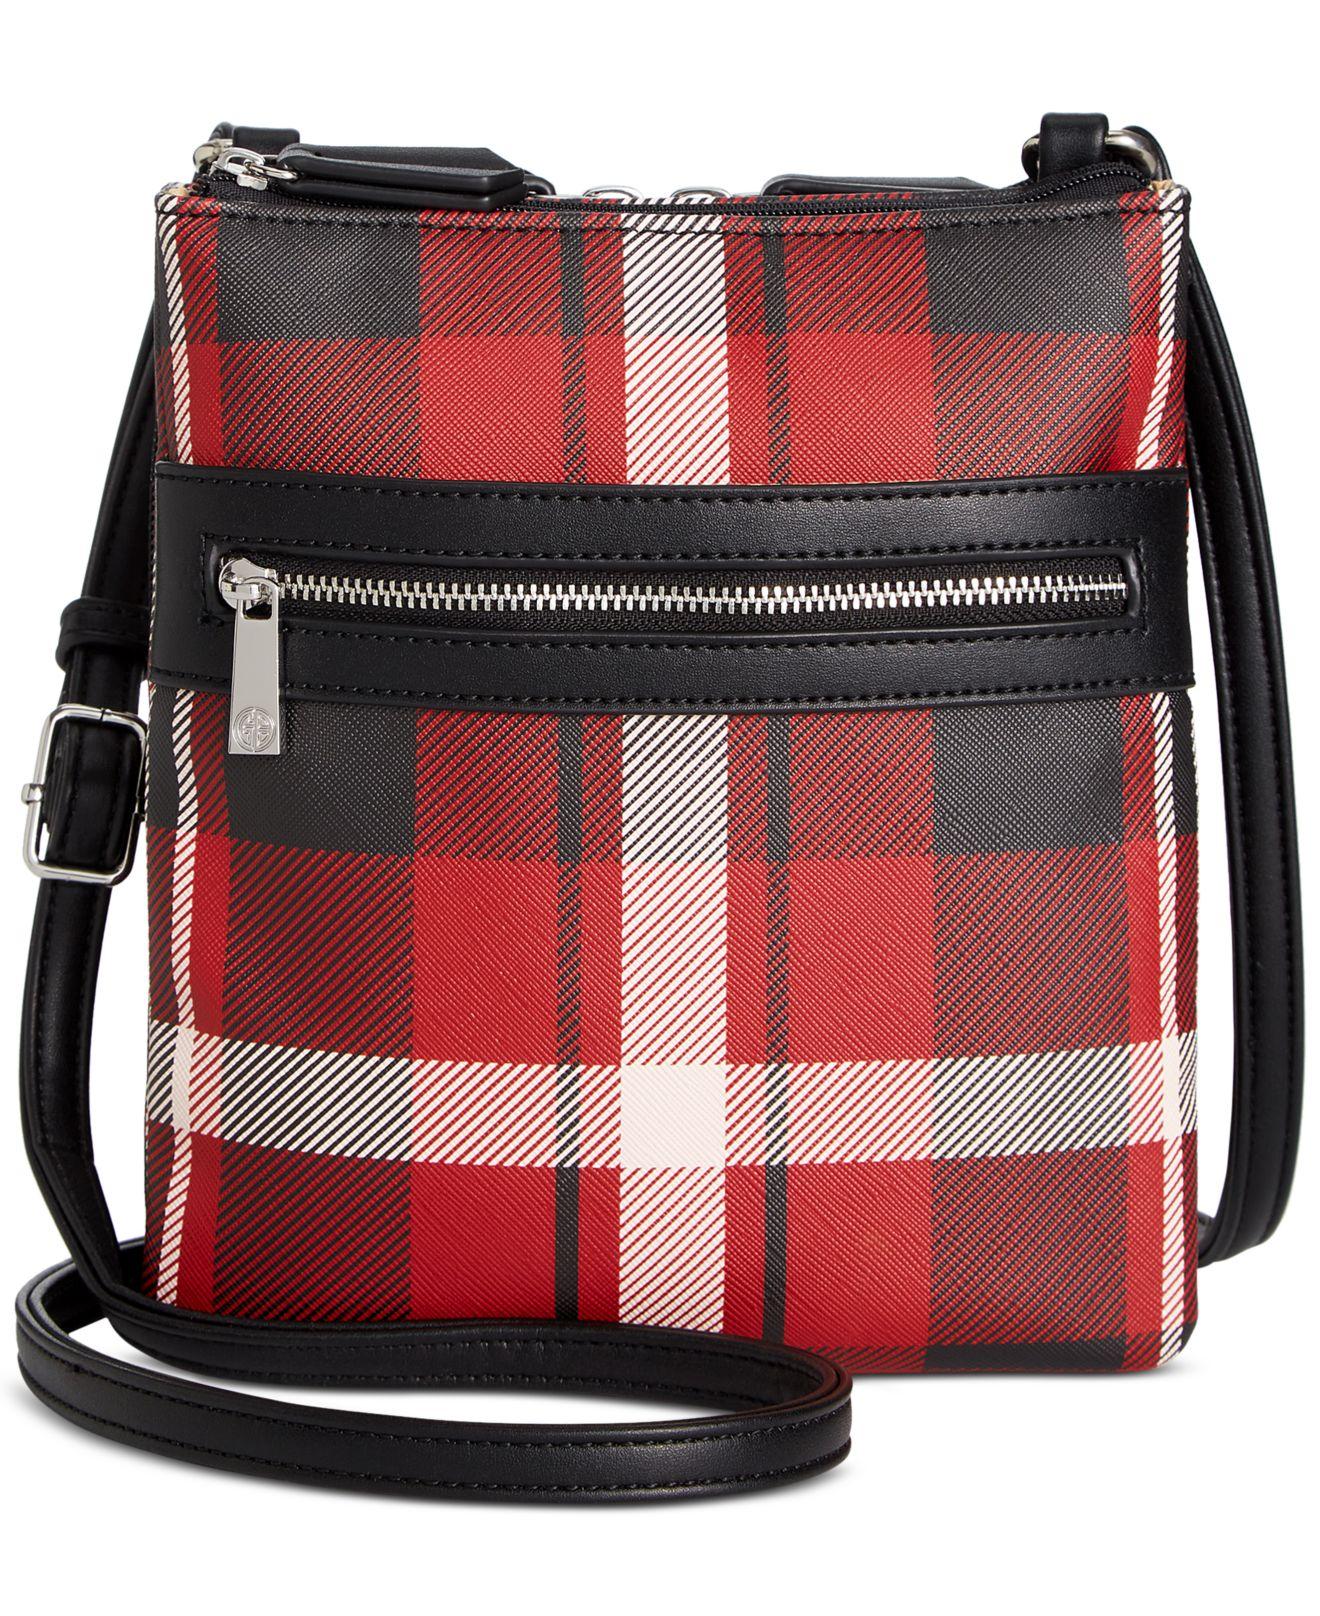 Giani Bernini Red Leather Crossbody Bag  Leather crossbody bag, Leather  crossbody, Crossbody bag